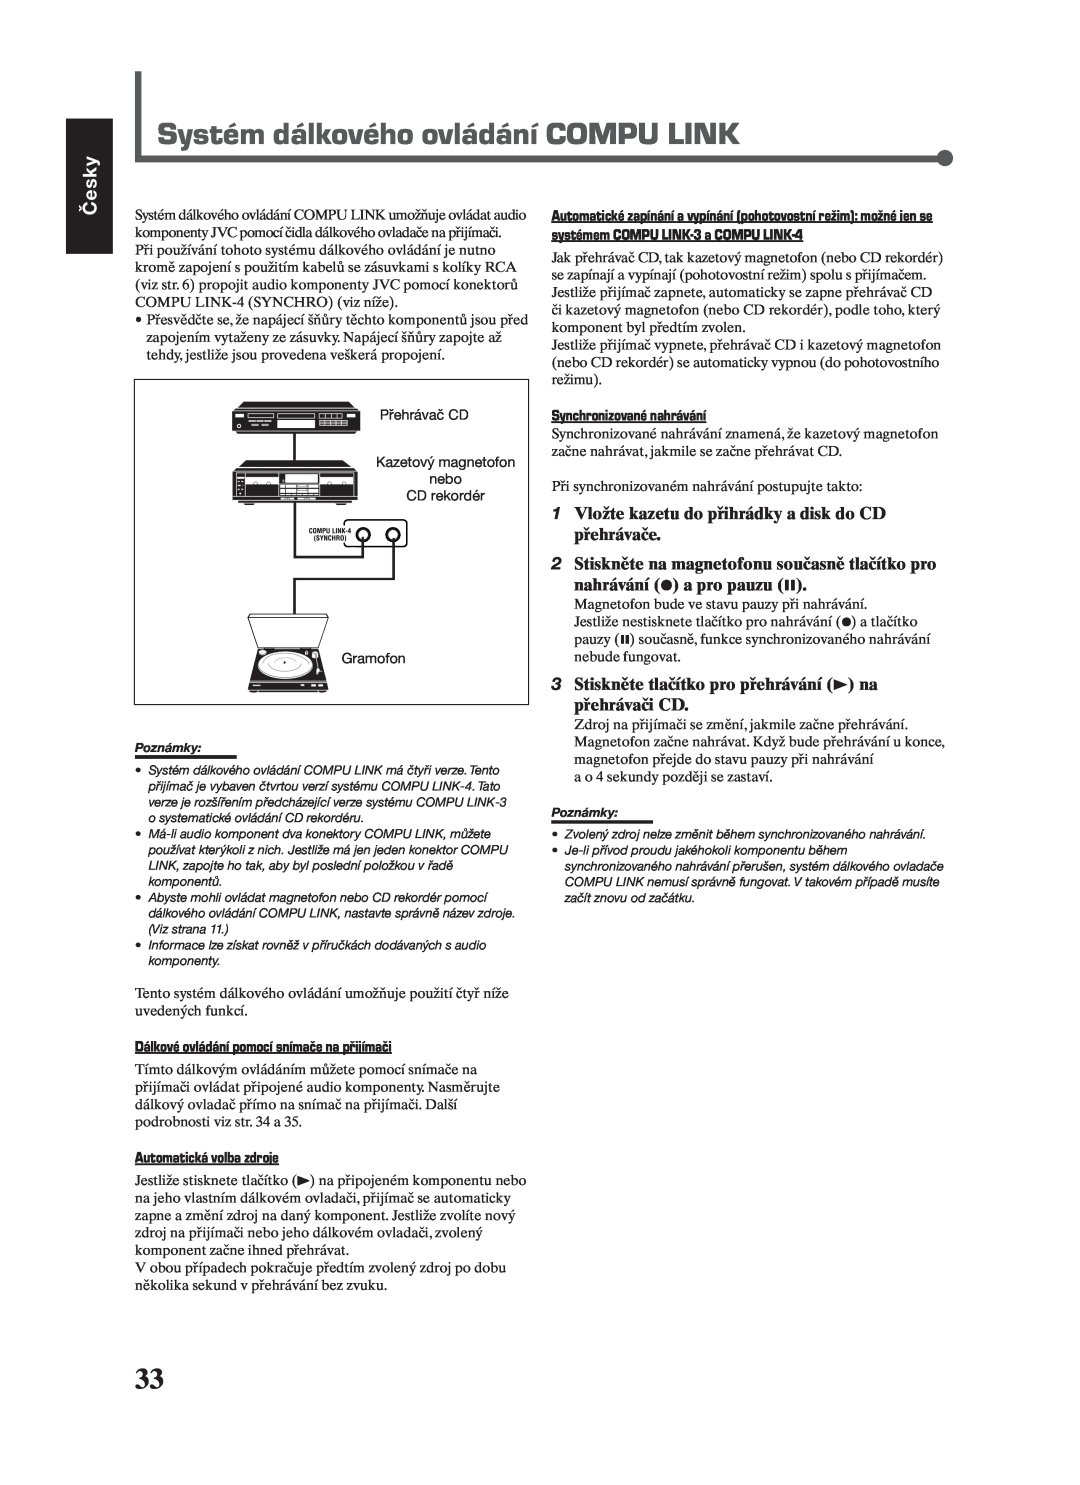 JVC RX-7022RSL manual Systém dálkového ovládání COMPU LINK, Česky, Dálkové ovládání pomocí snímače na přijímači 